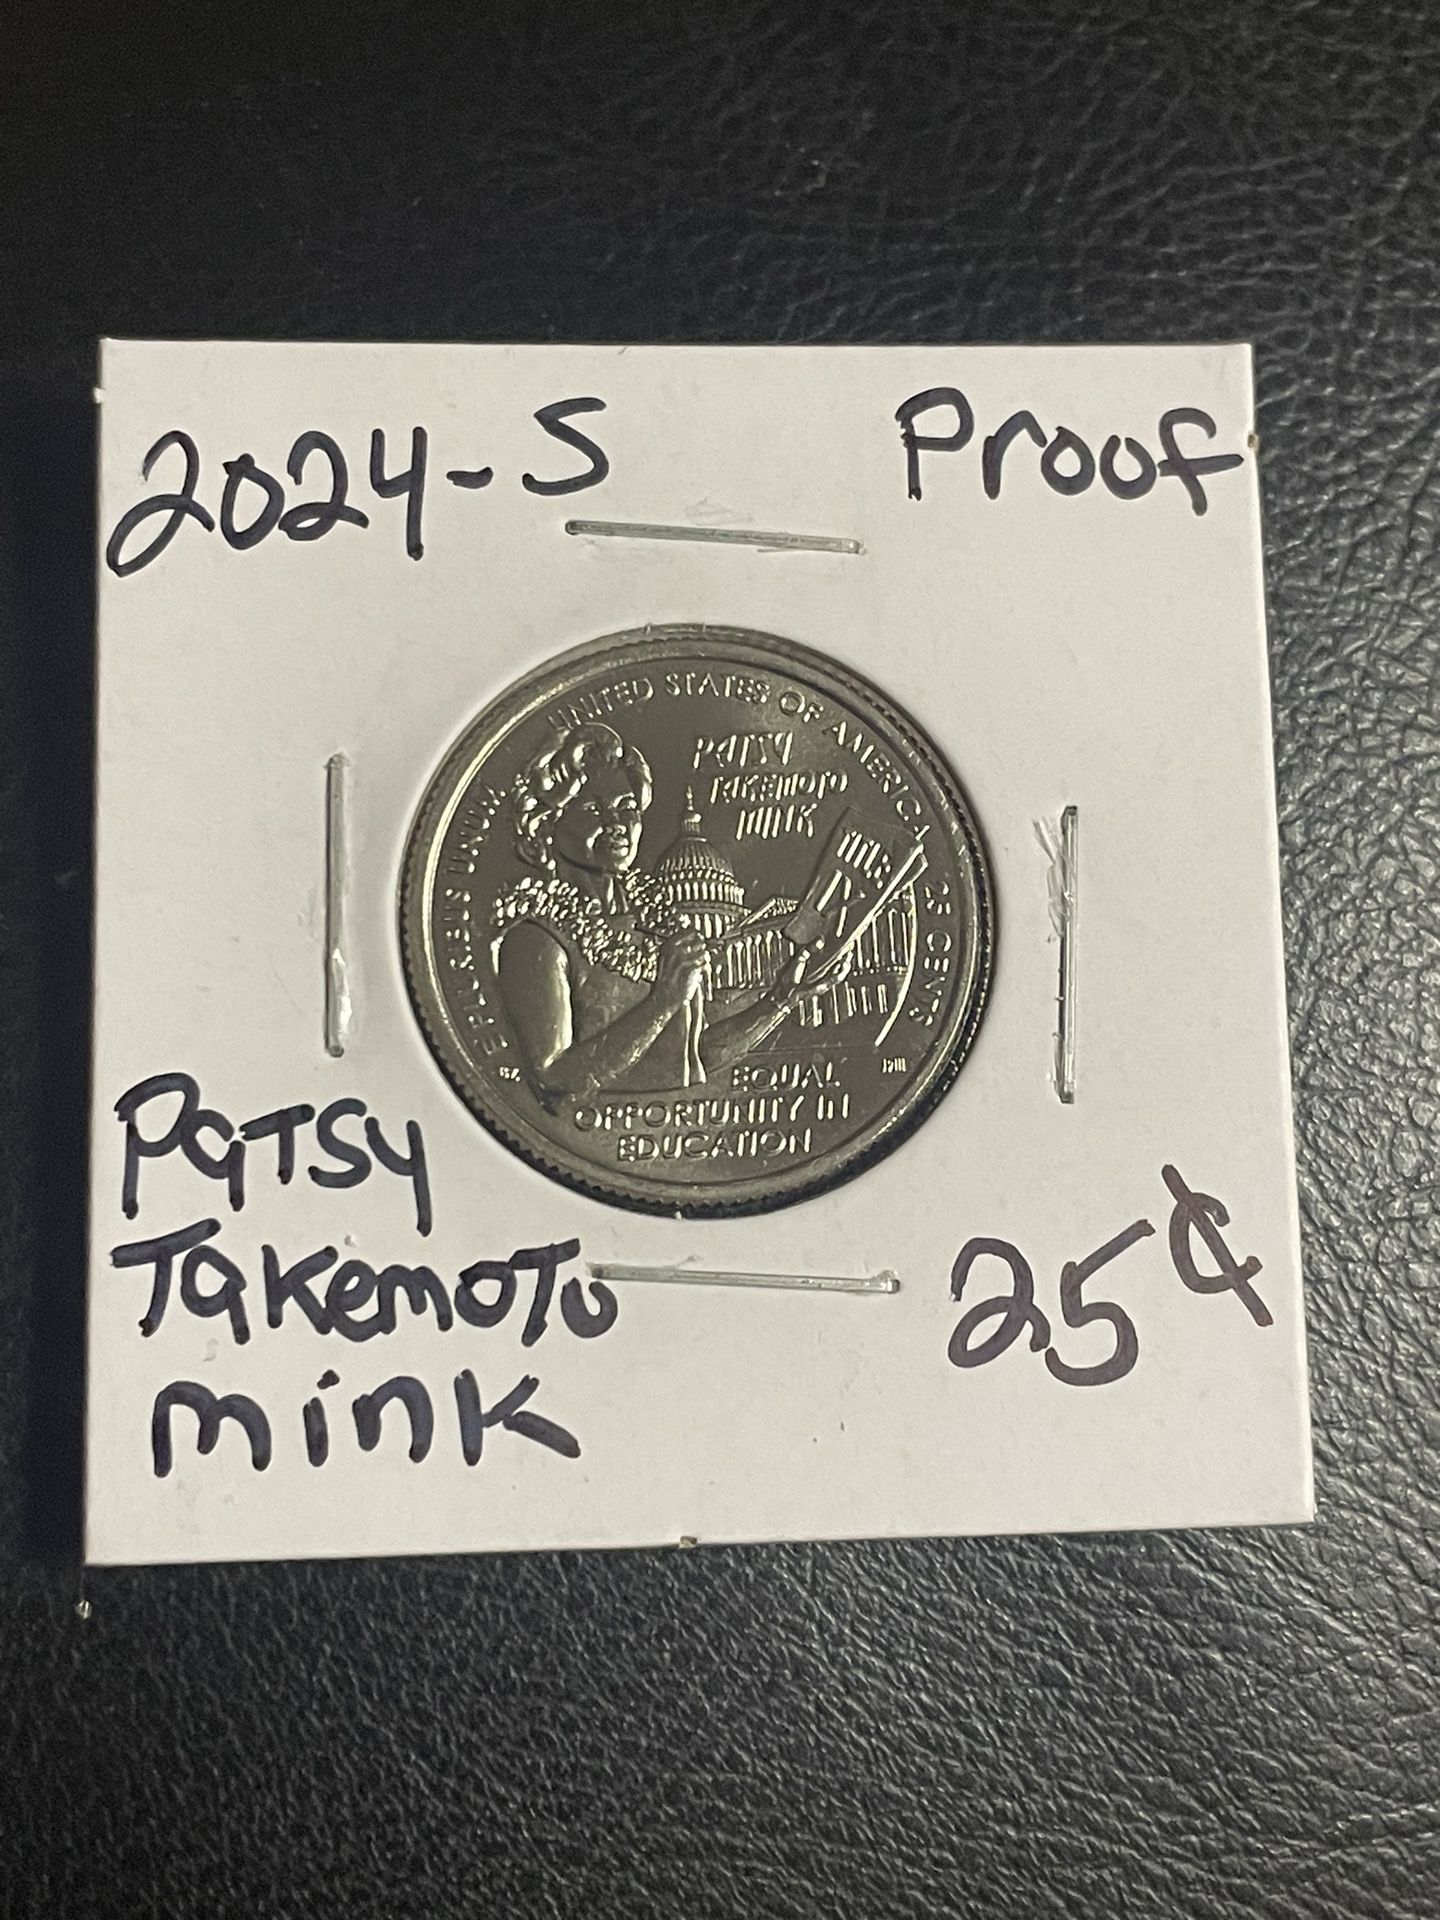 2024-S Patsy Takemoto Mink Quarter Proof